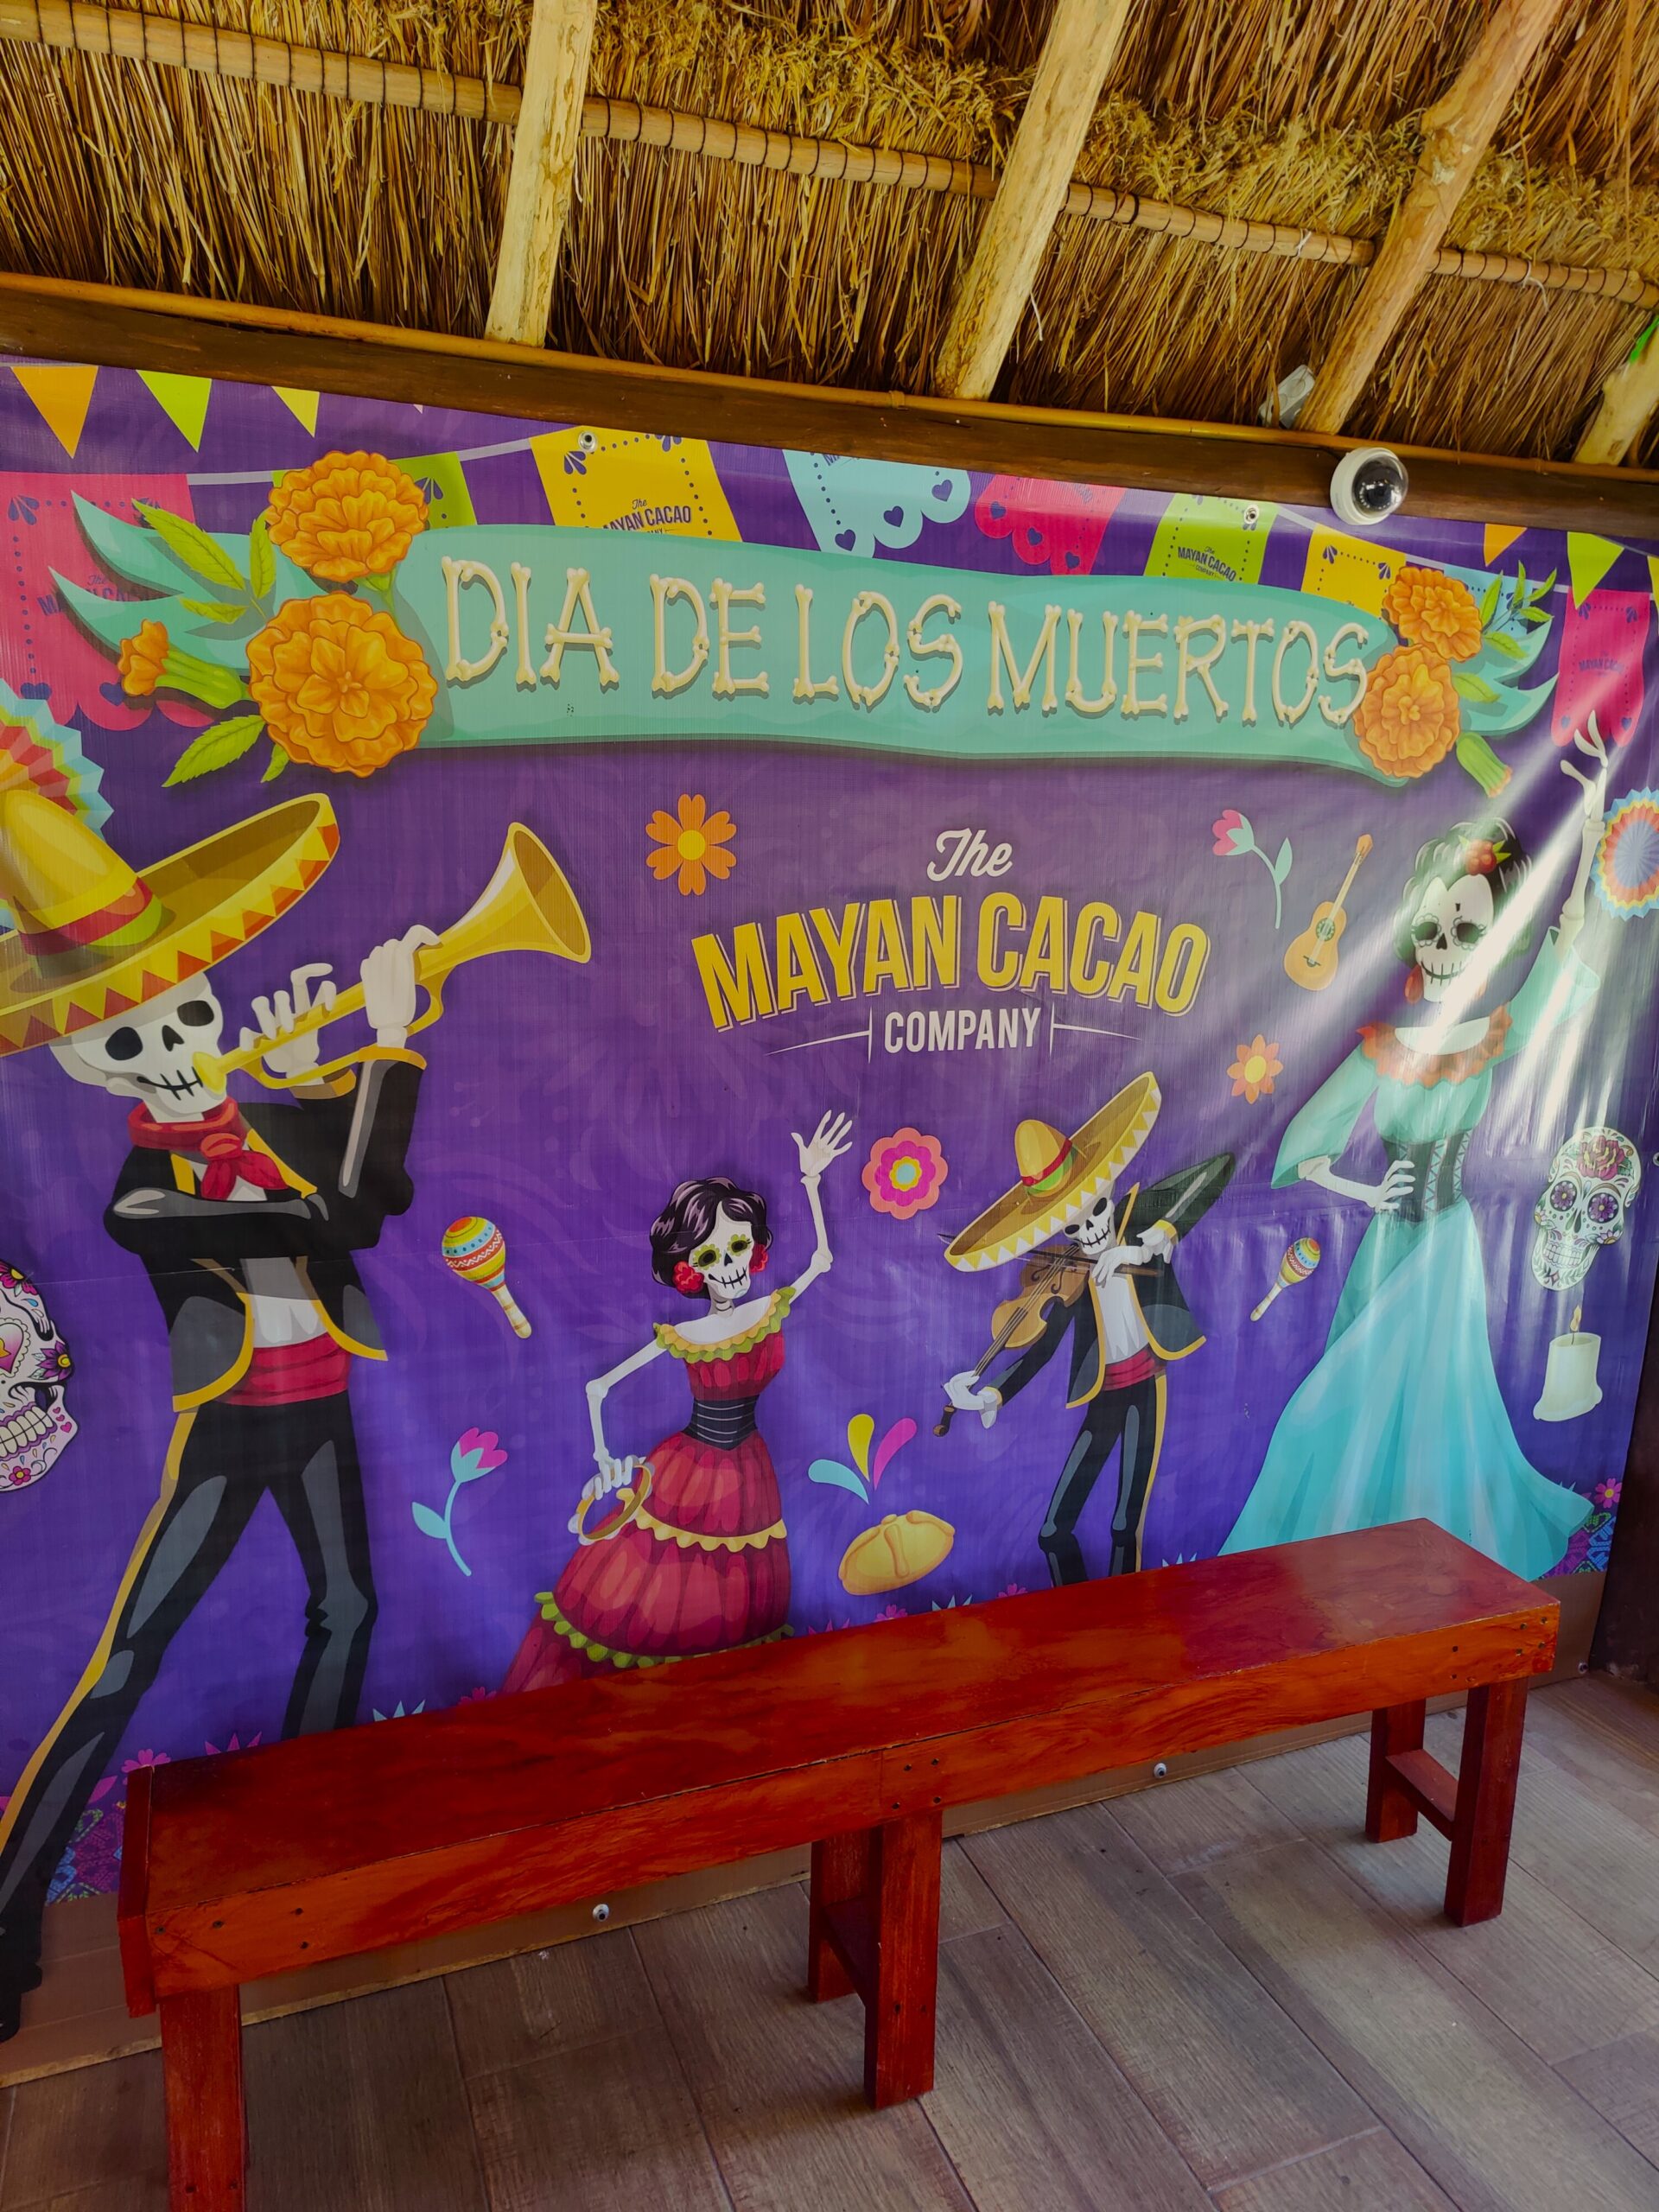 Dia de Los Muertos in Cozumel, Mexico